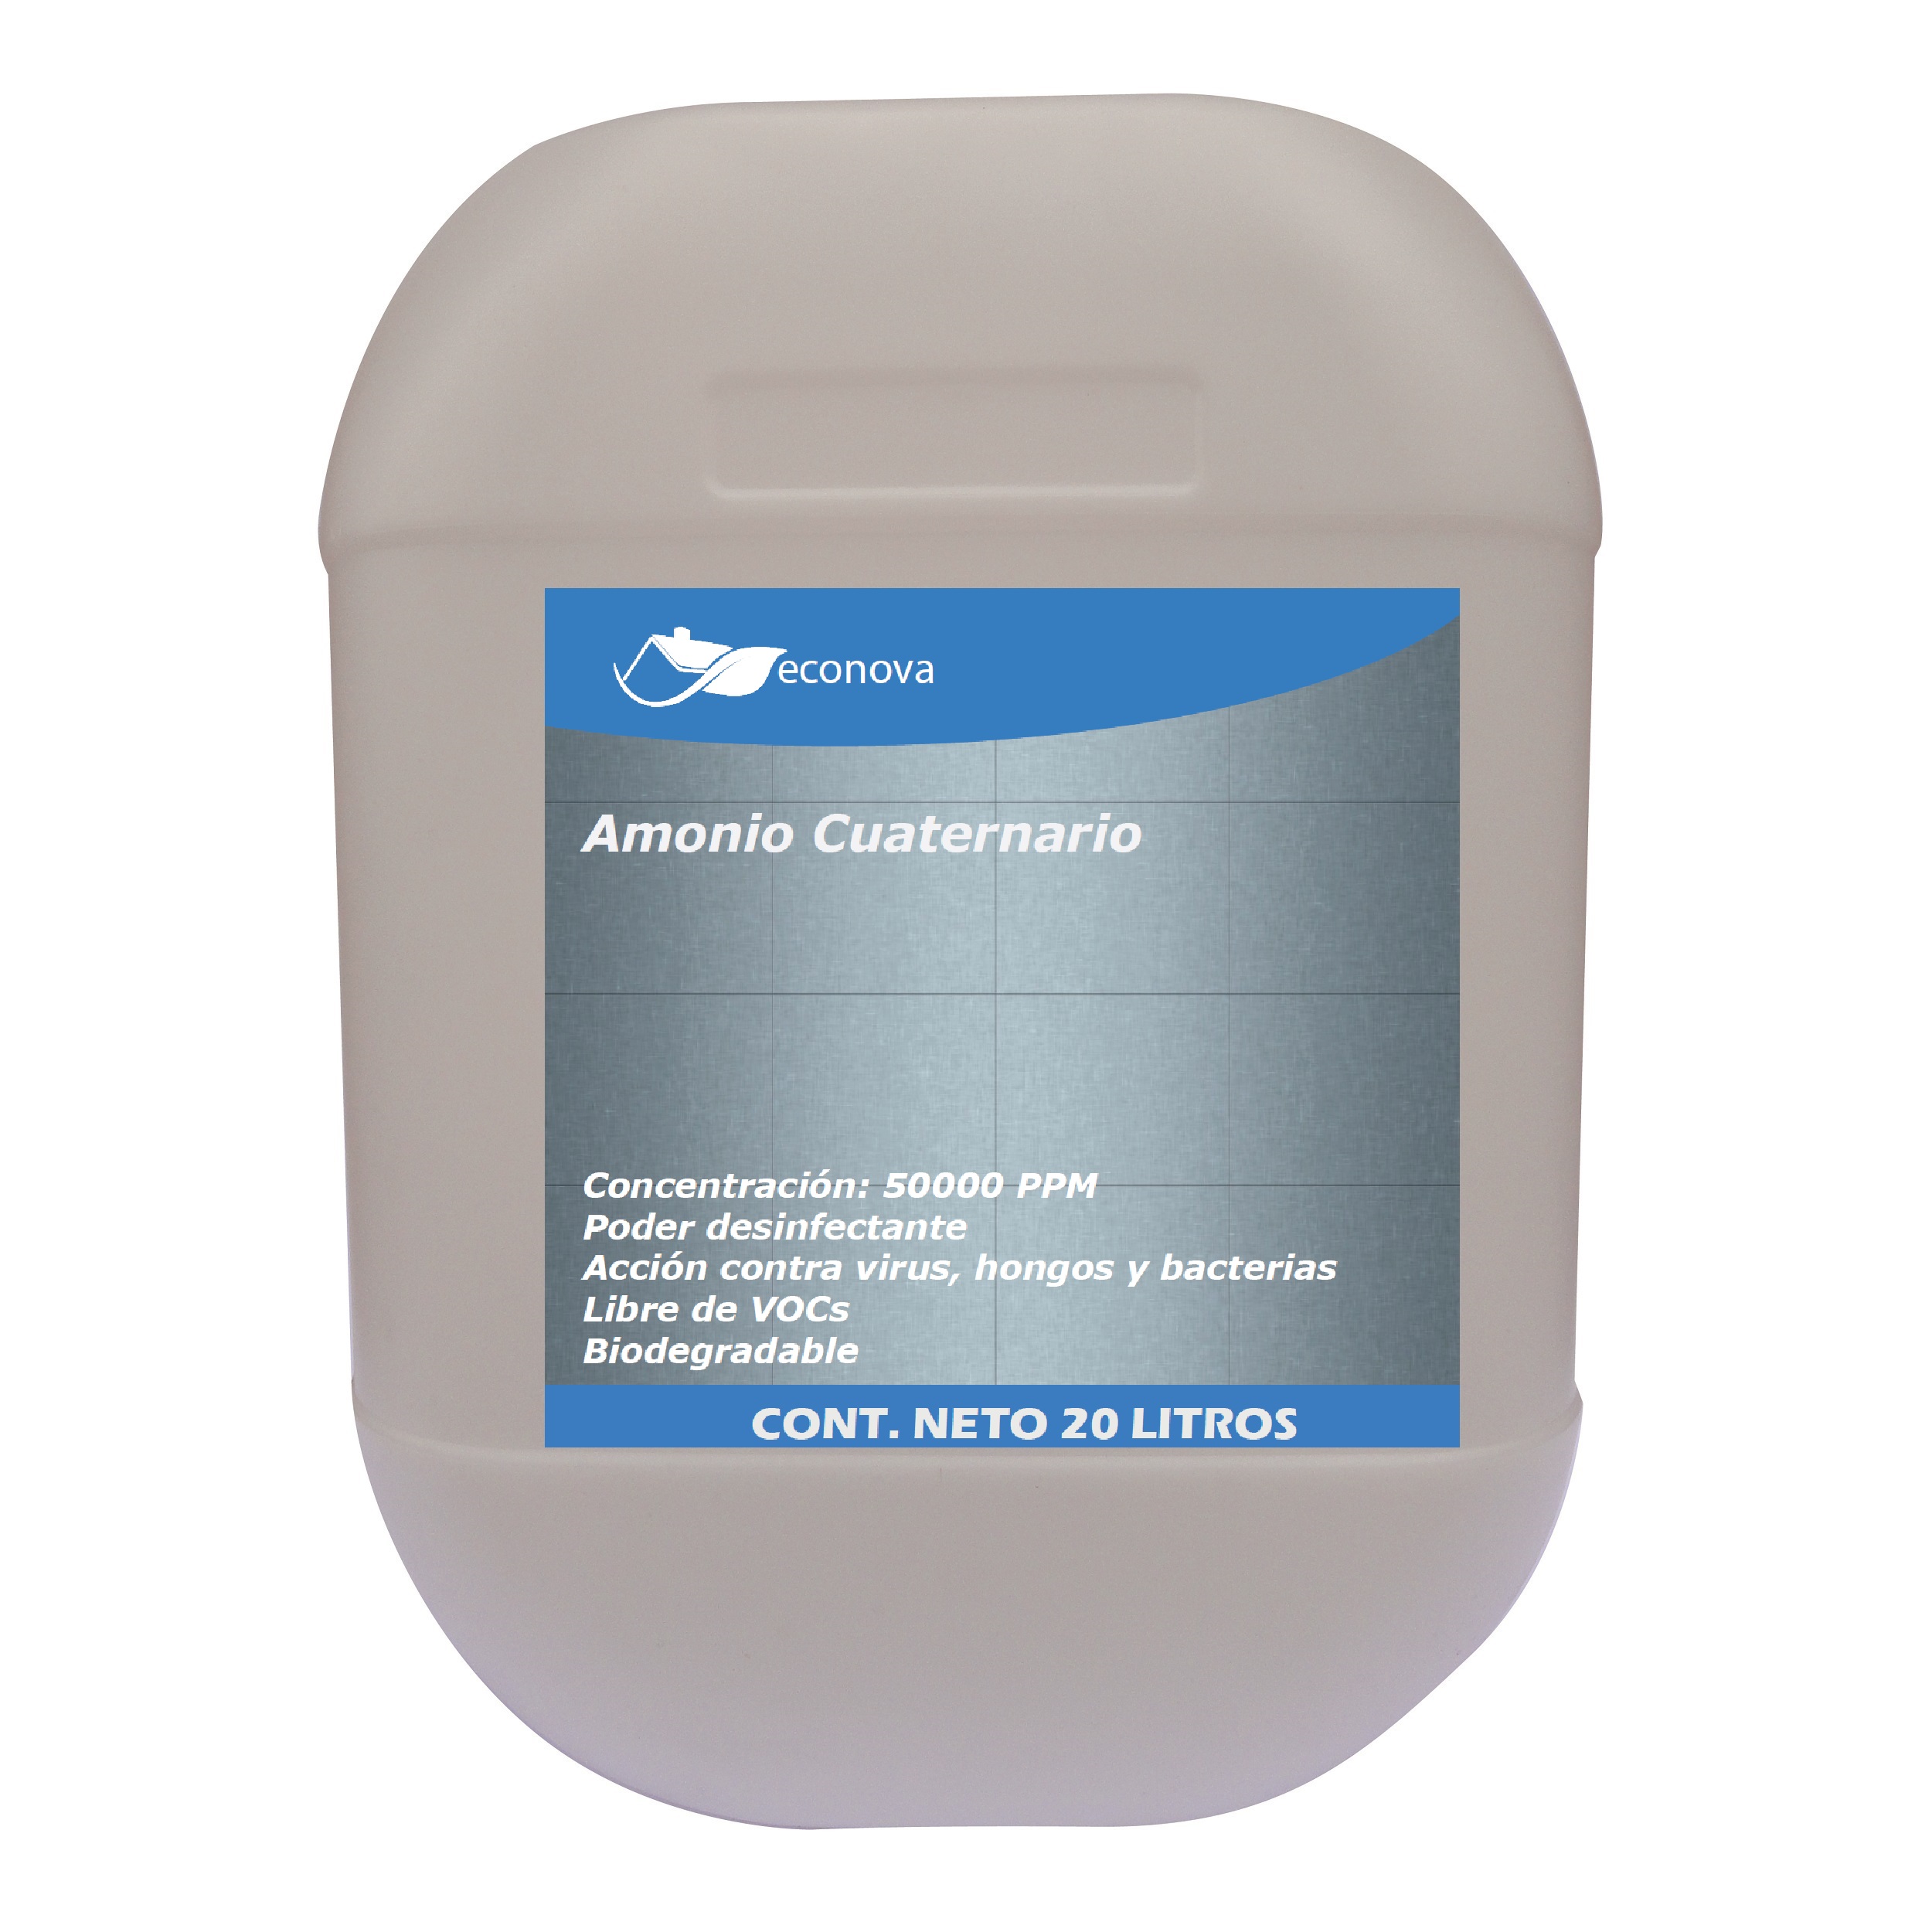 Amonio Cuaternario Econova - 20 litros